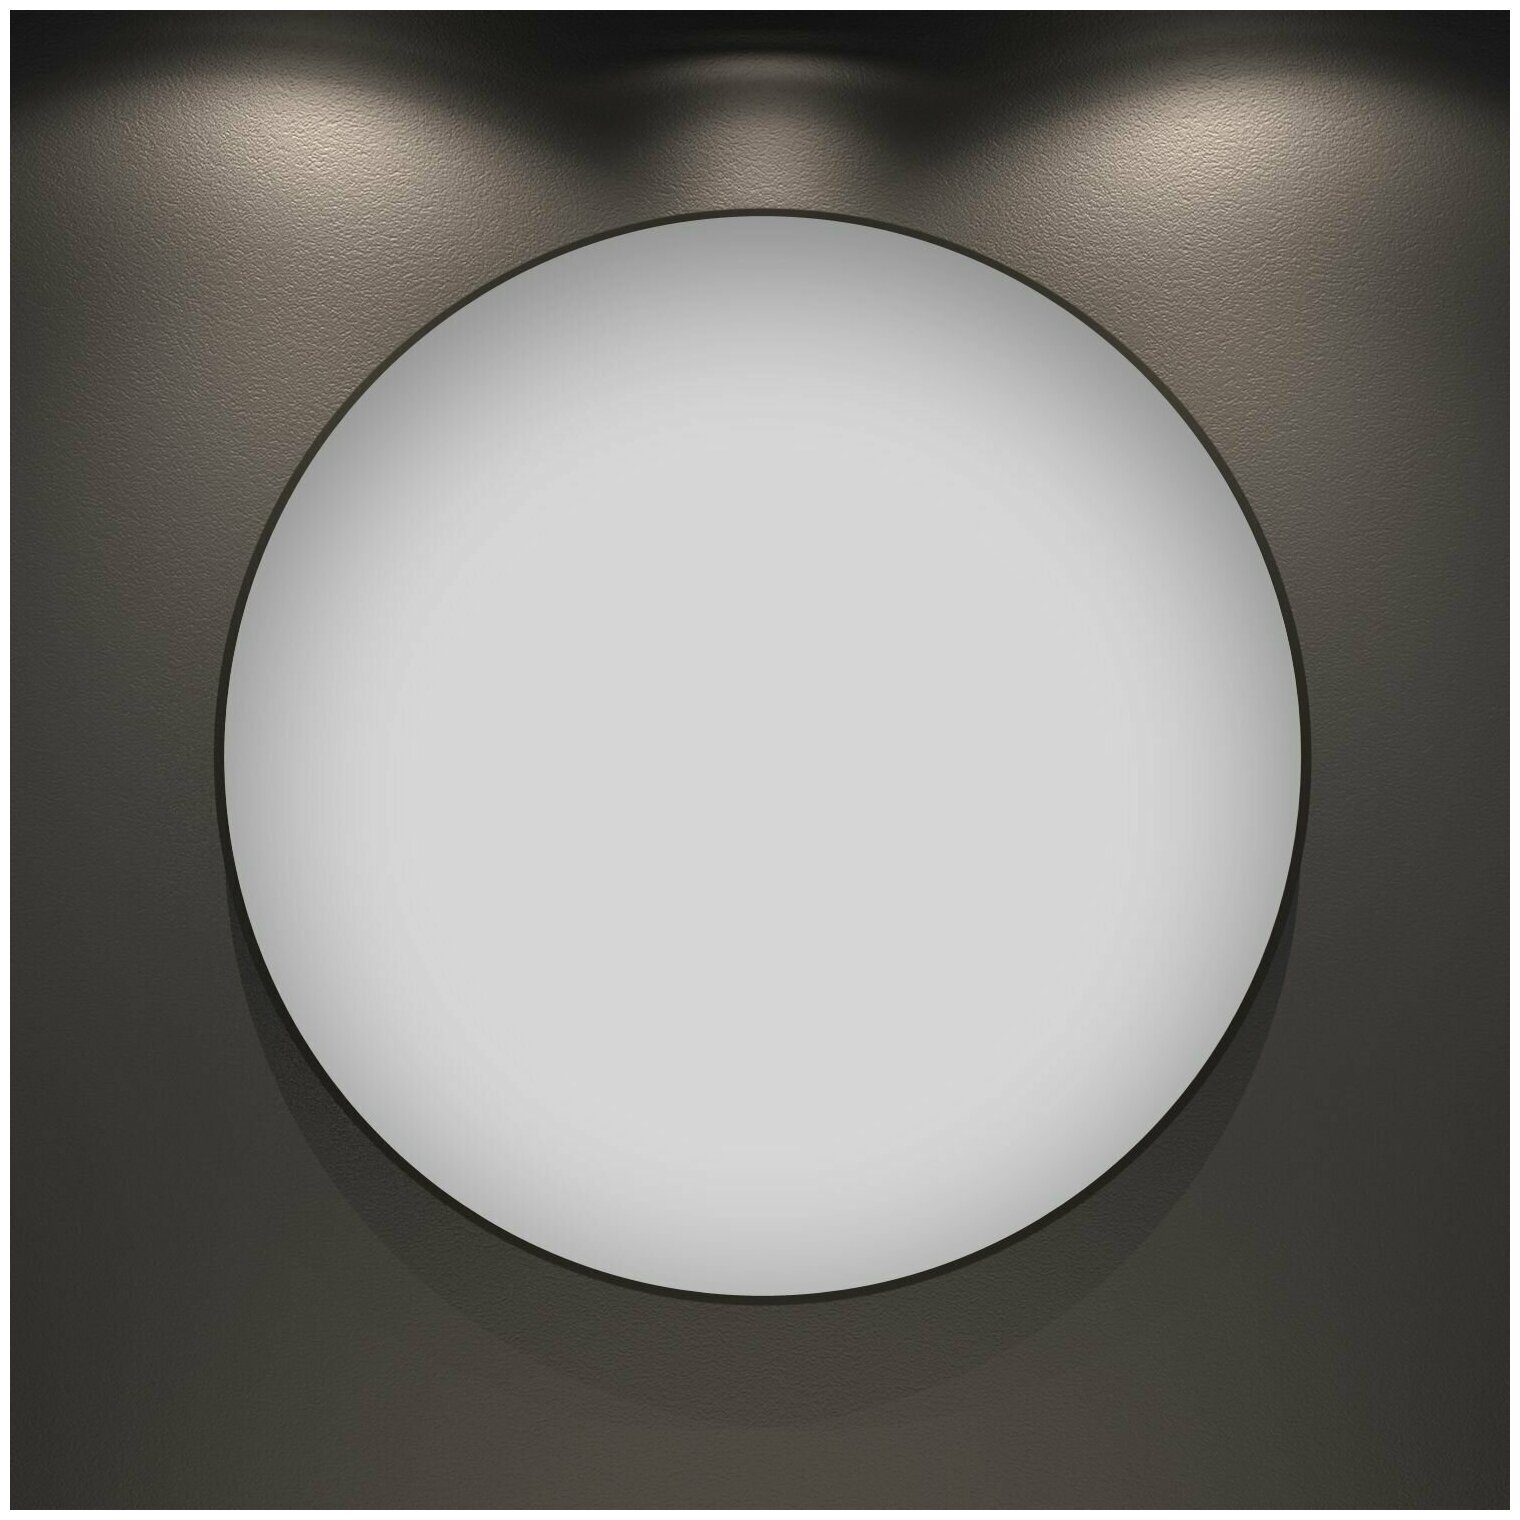 Настенное зеркало в ванную Wellsee 7 Rays' Spectrum 172200070 : влагостойкое круглое зеркало 85 см с черным матовым контуром